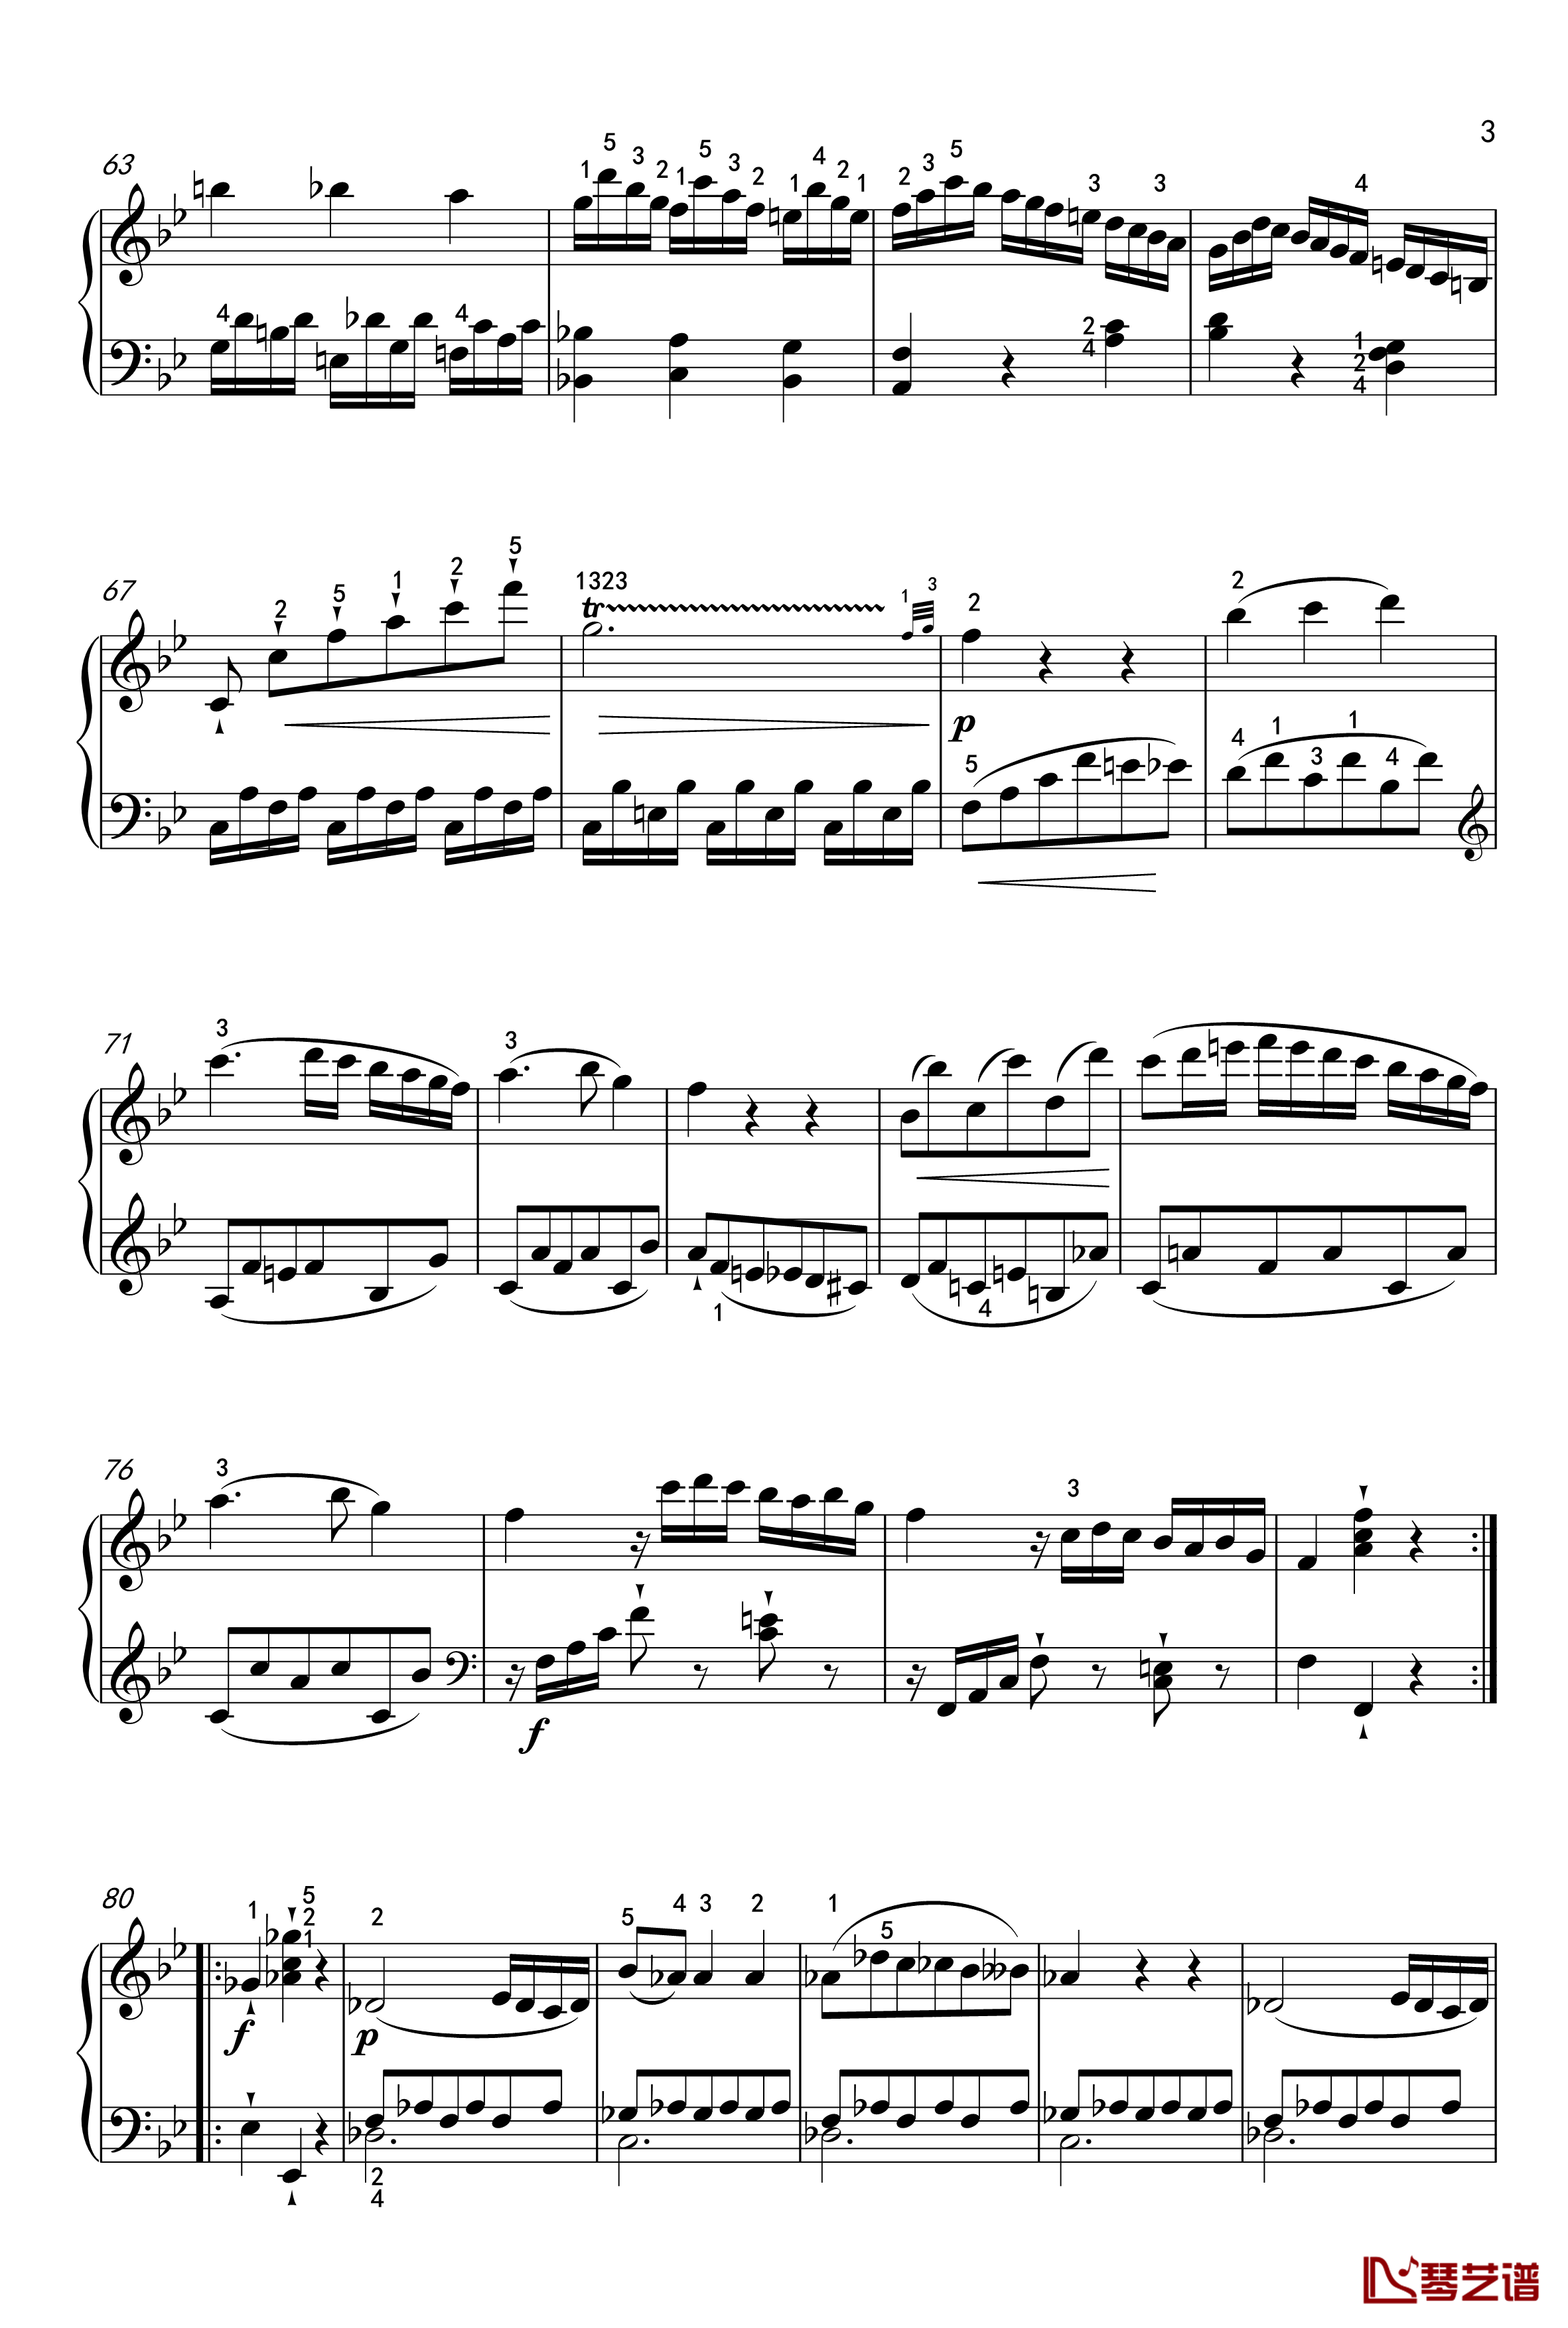 奏鸣曲钢琴谱-K-570-第一乐章-莫扎特3